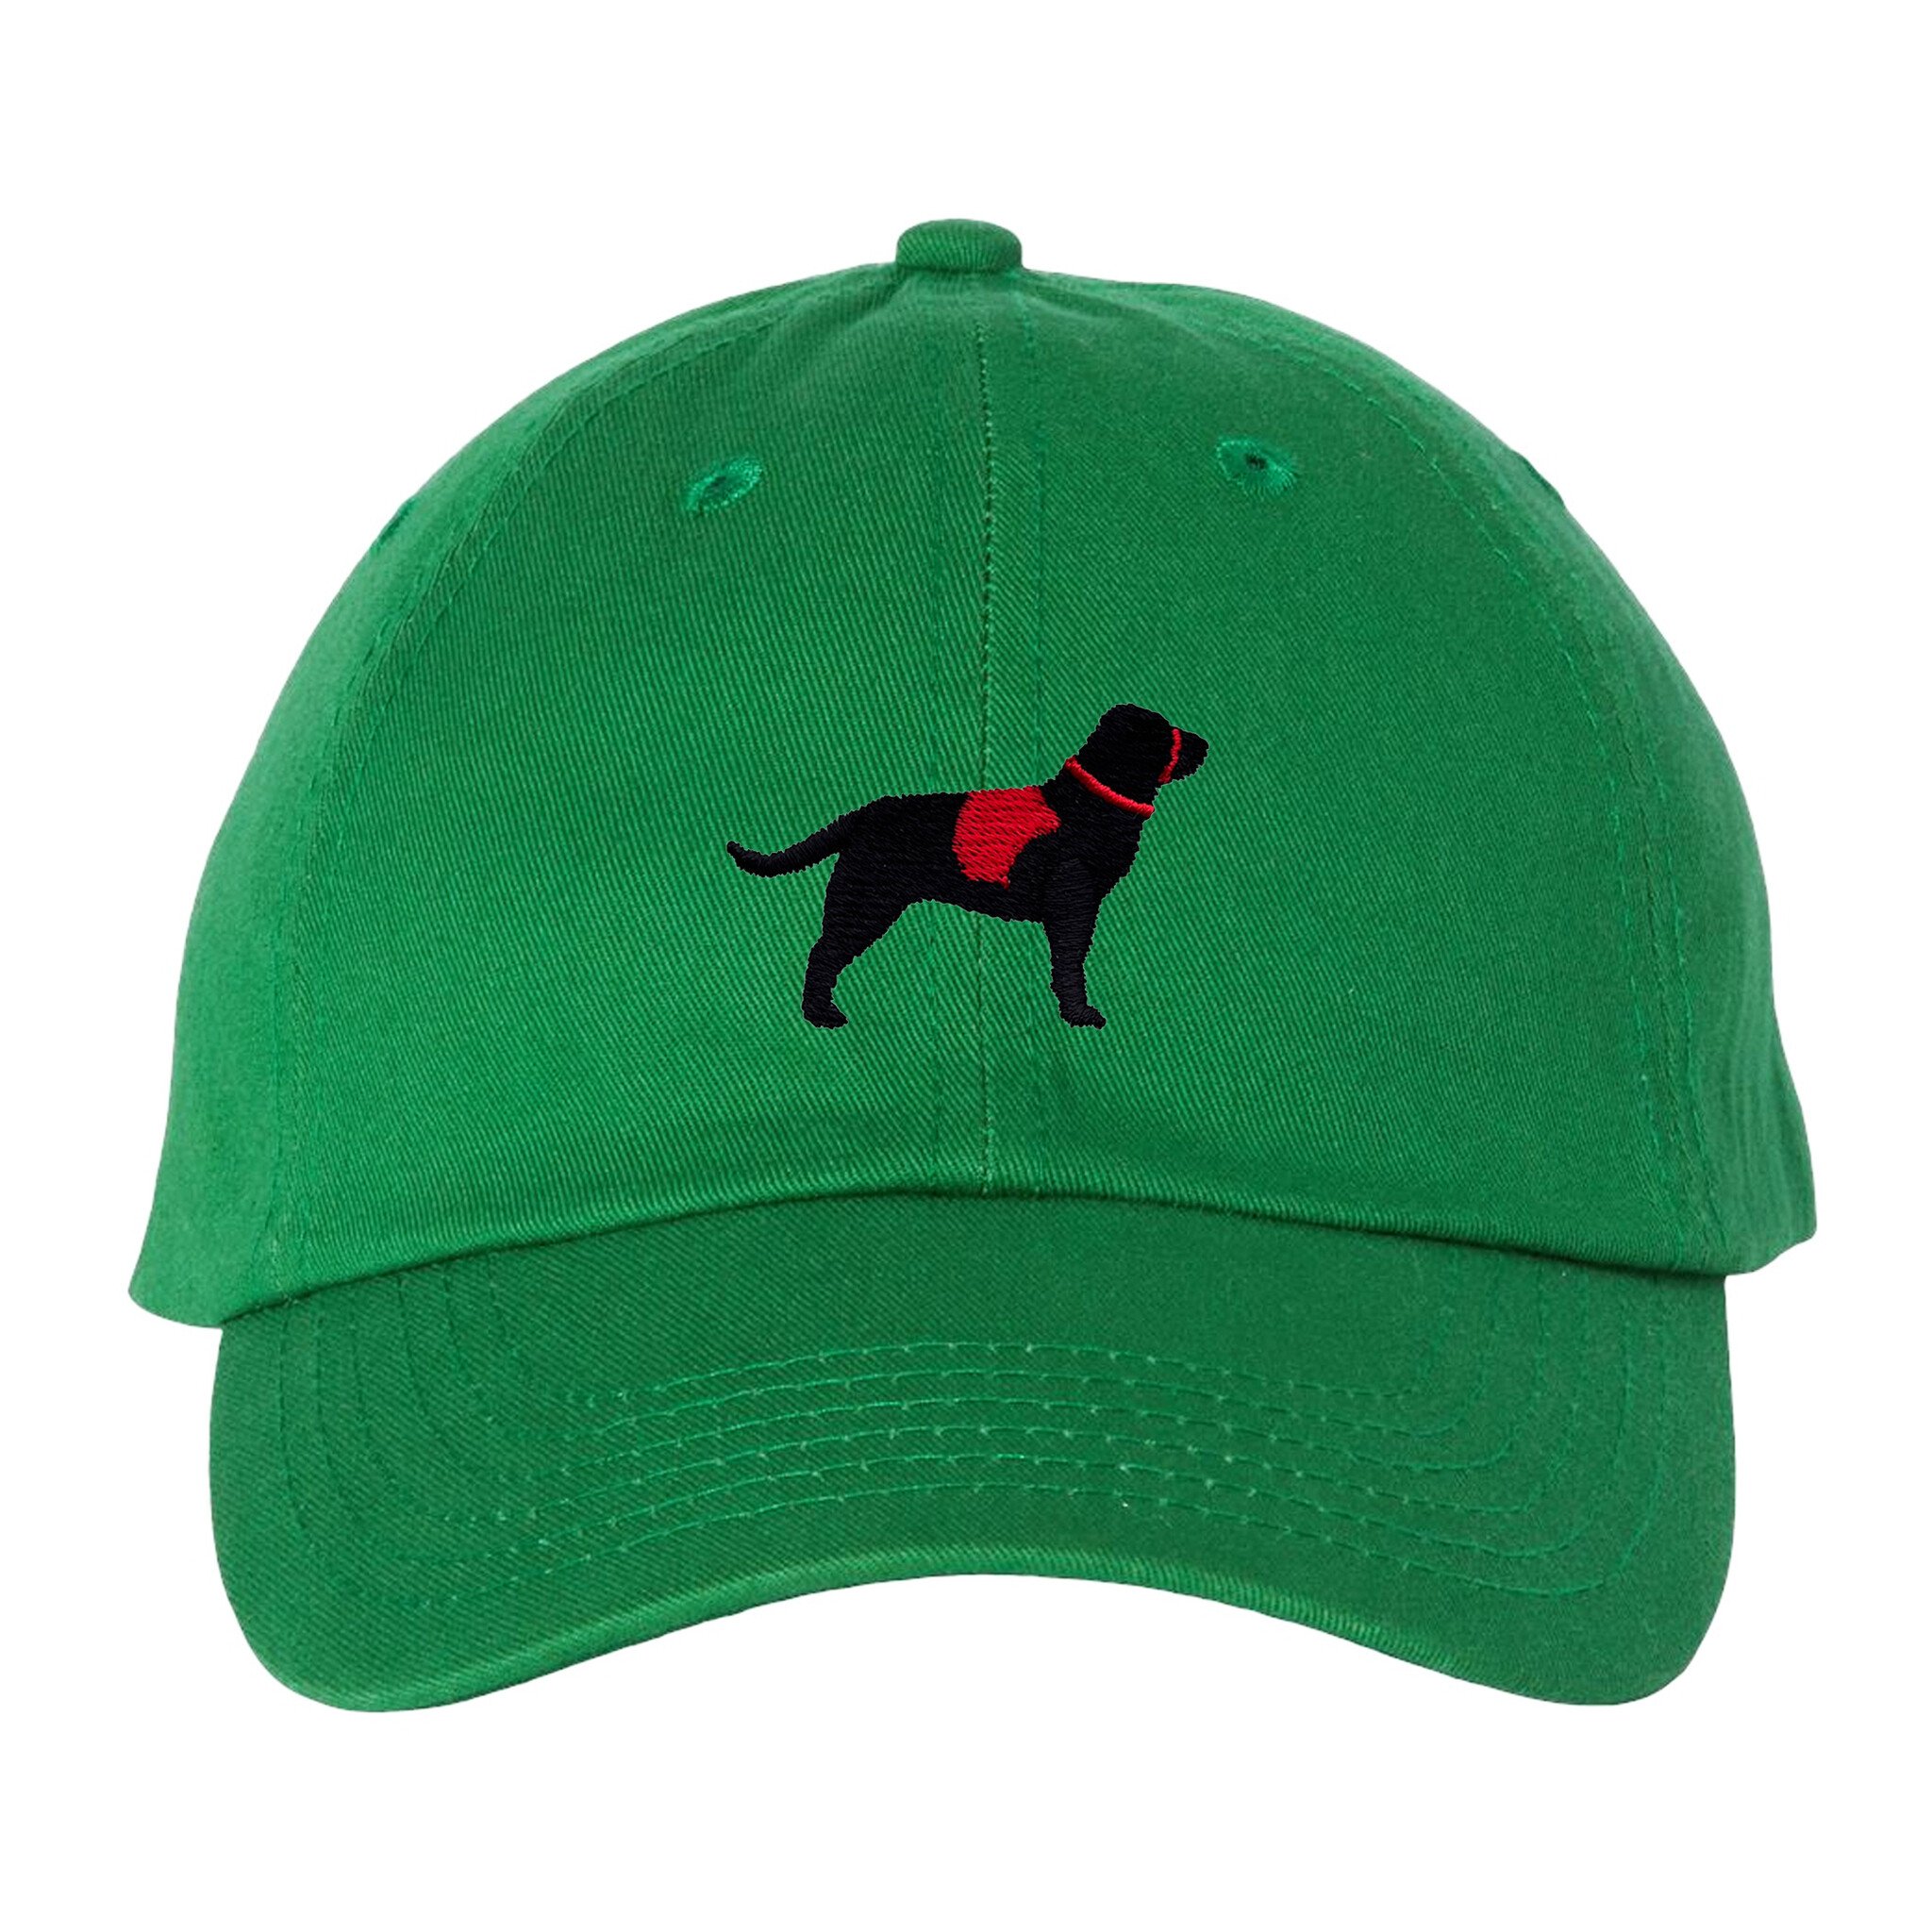 Baseball Hat- Service Dog